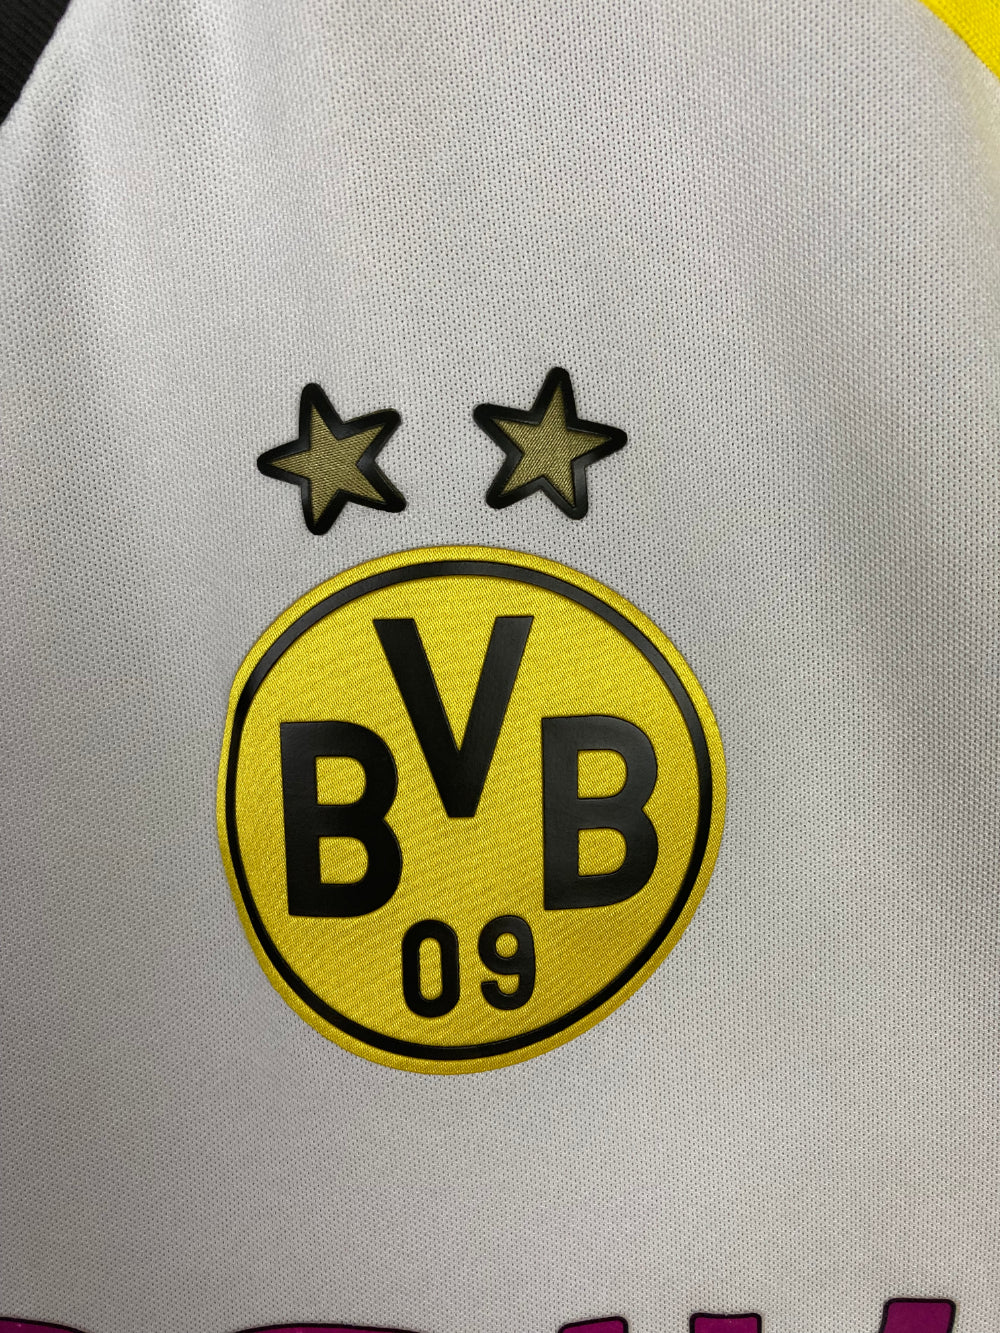 
                  
                    Original Borussia Dortmund Away Jersey 2015-2016 #10 of Henrikh Mkhitaryan - M
                  
                